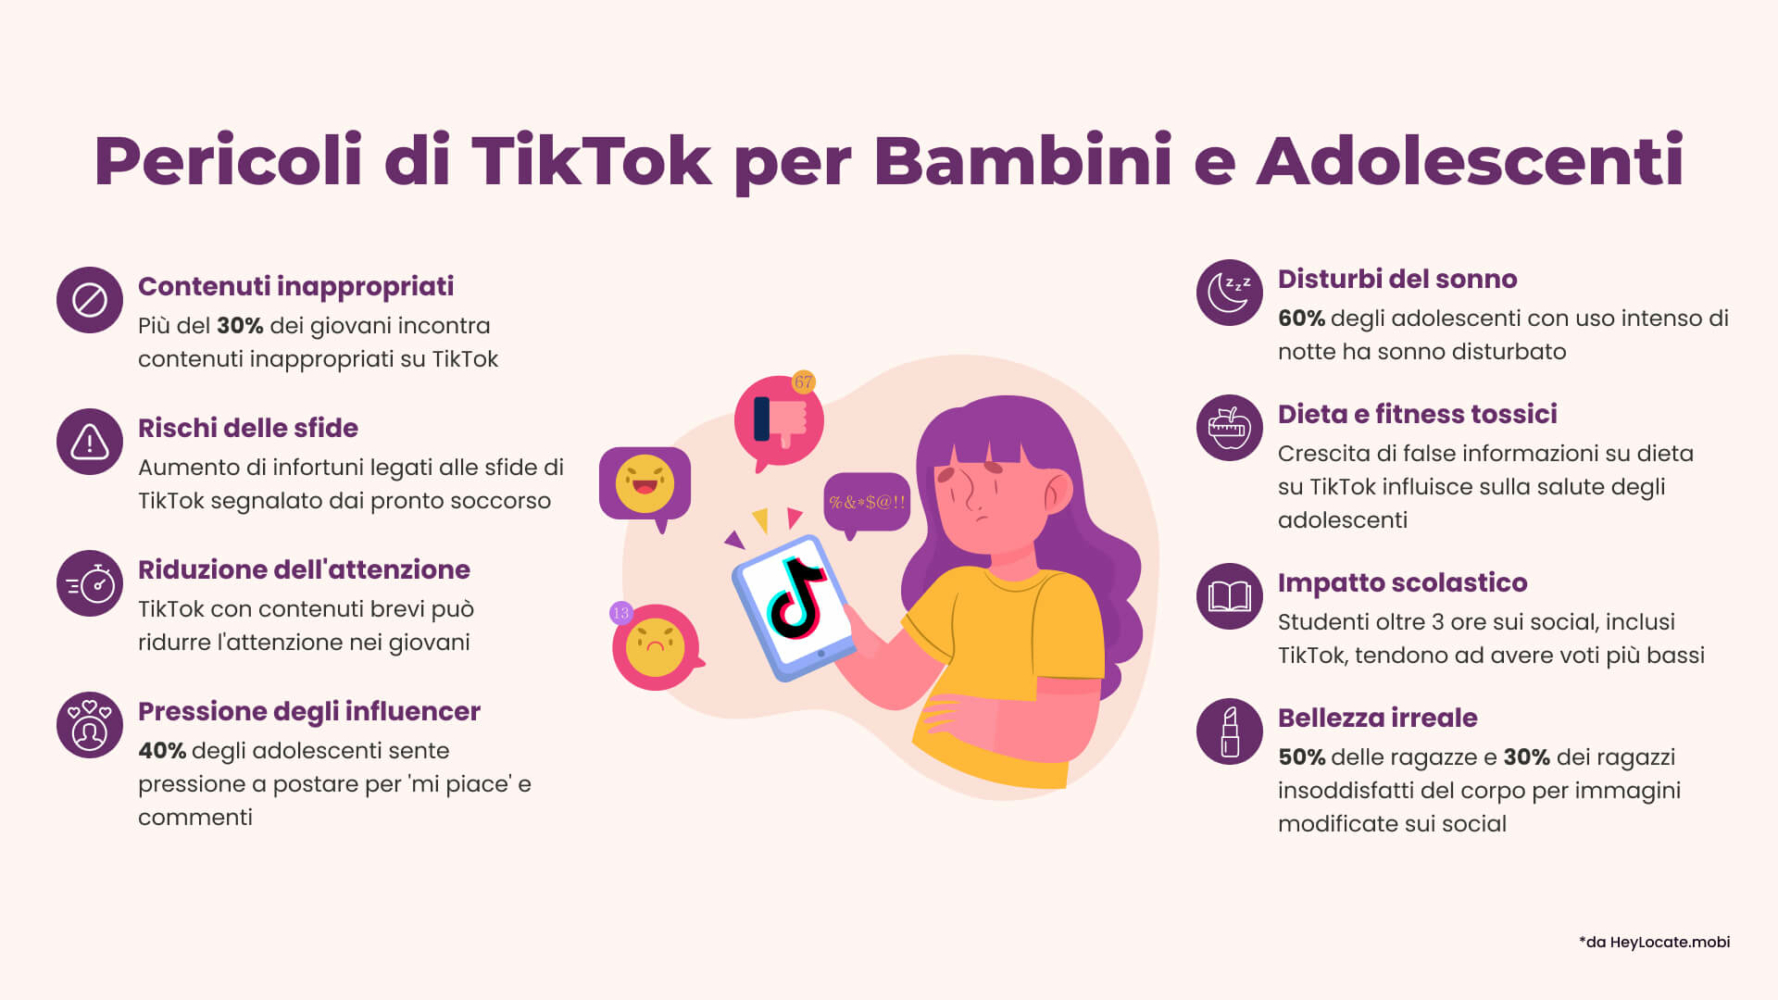 Elenco dei pericoli di TikTok per i bambini e gli adolescenti illustrati nell'infografica di HeyLocate.mobi
